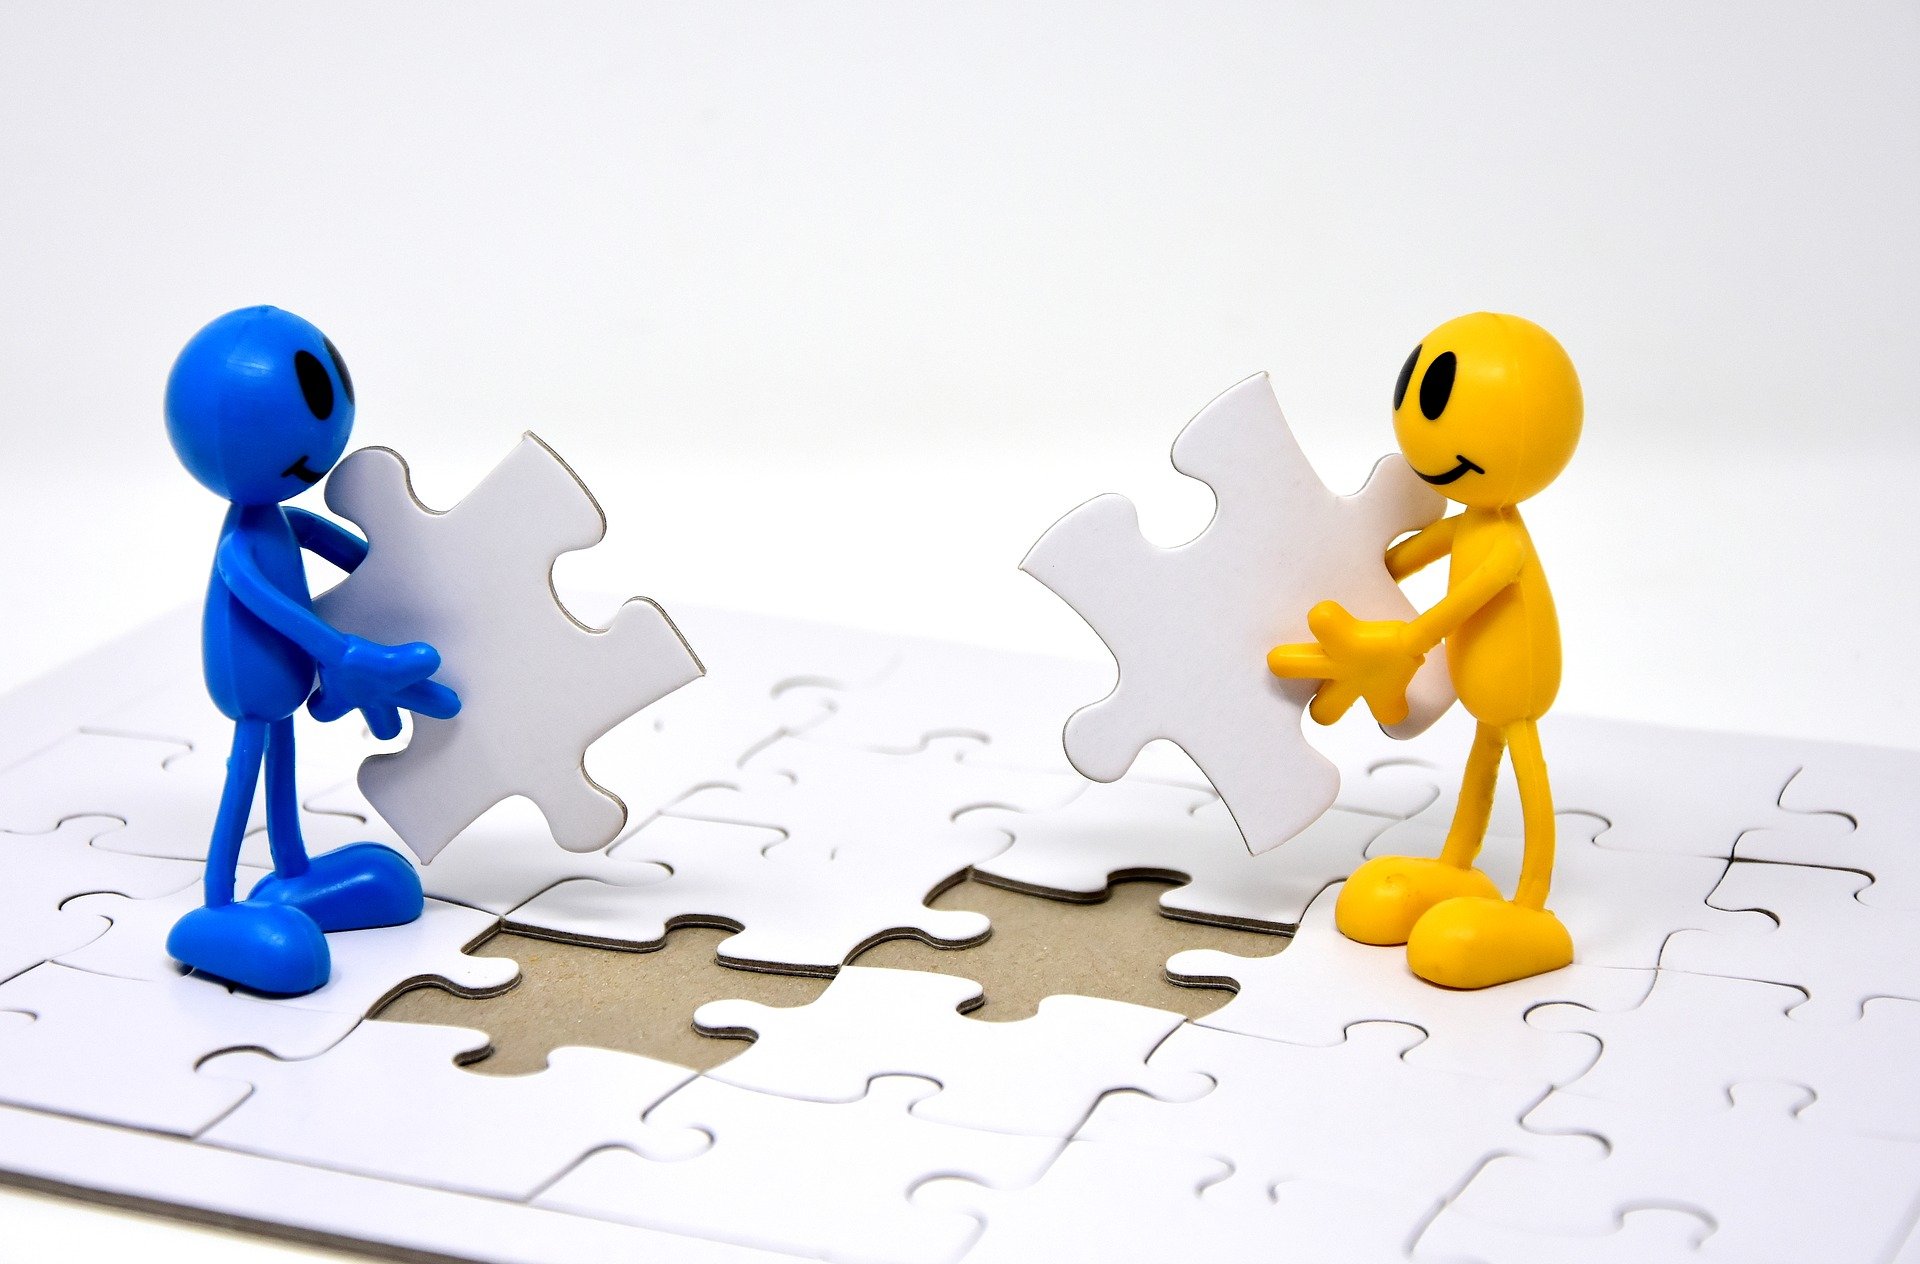 La imagen muestra un muñeco azul y un muñeco amarillo, que están de pie sobre un puzzle al que faltan las dos piezas que ellos sostienen en las manos